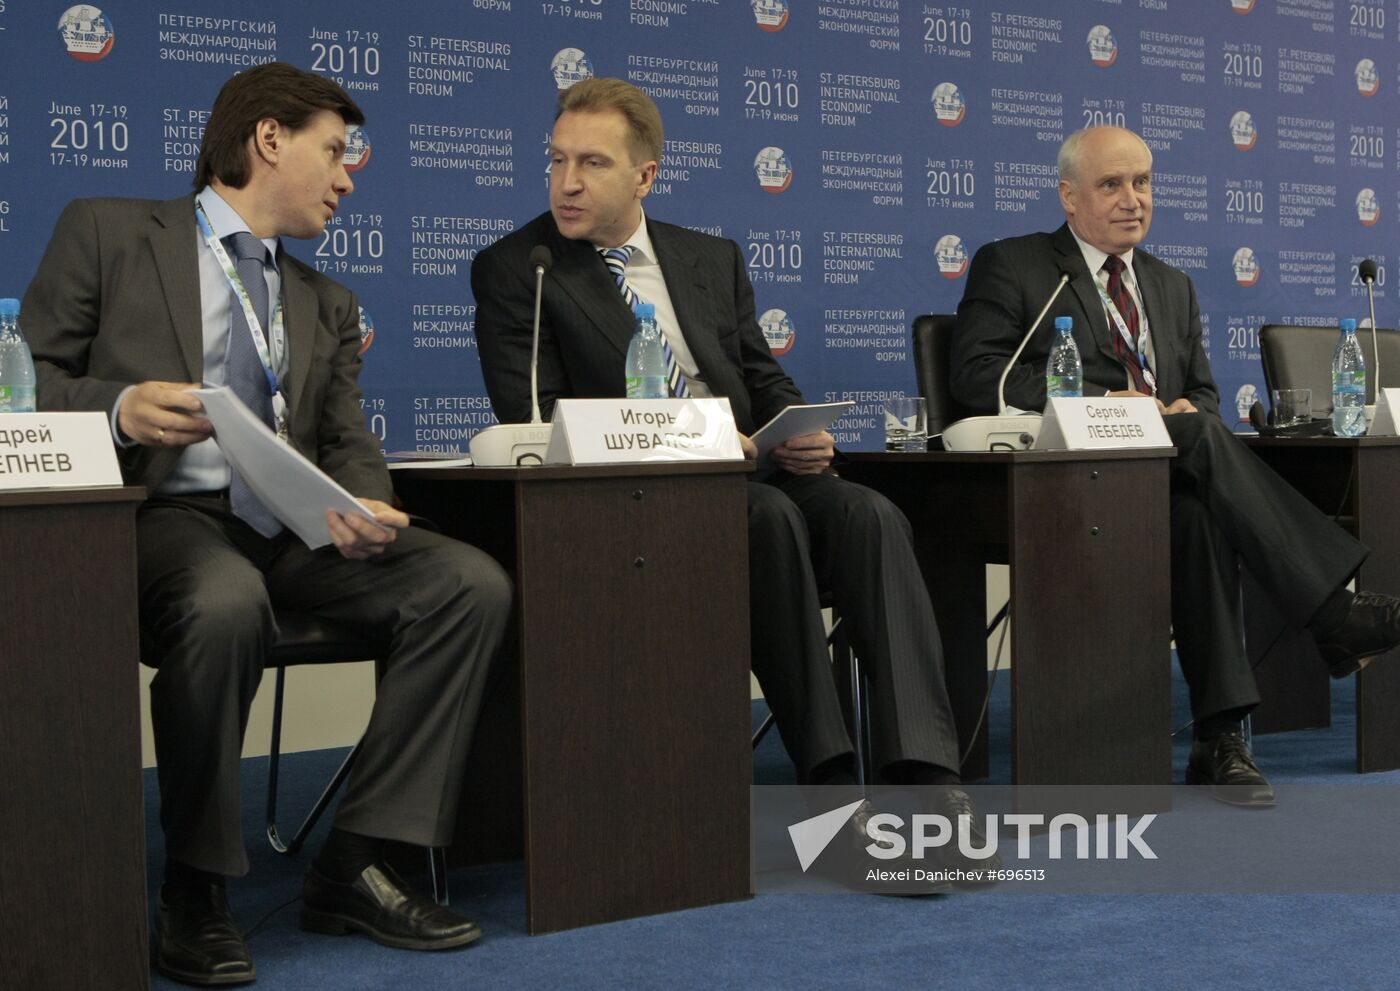 Andrei Slepnev, Igor Shuvalov, Sergei Lebedev at SPIEF